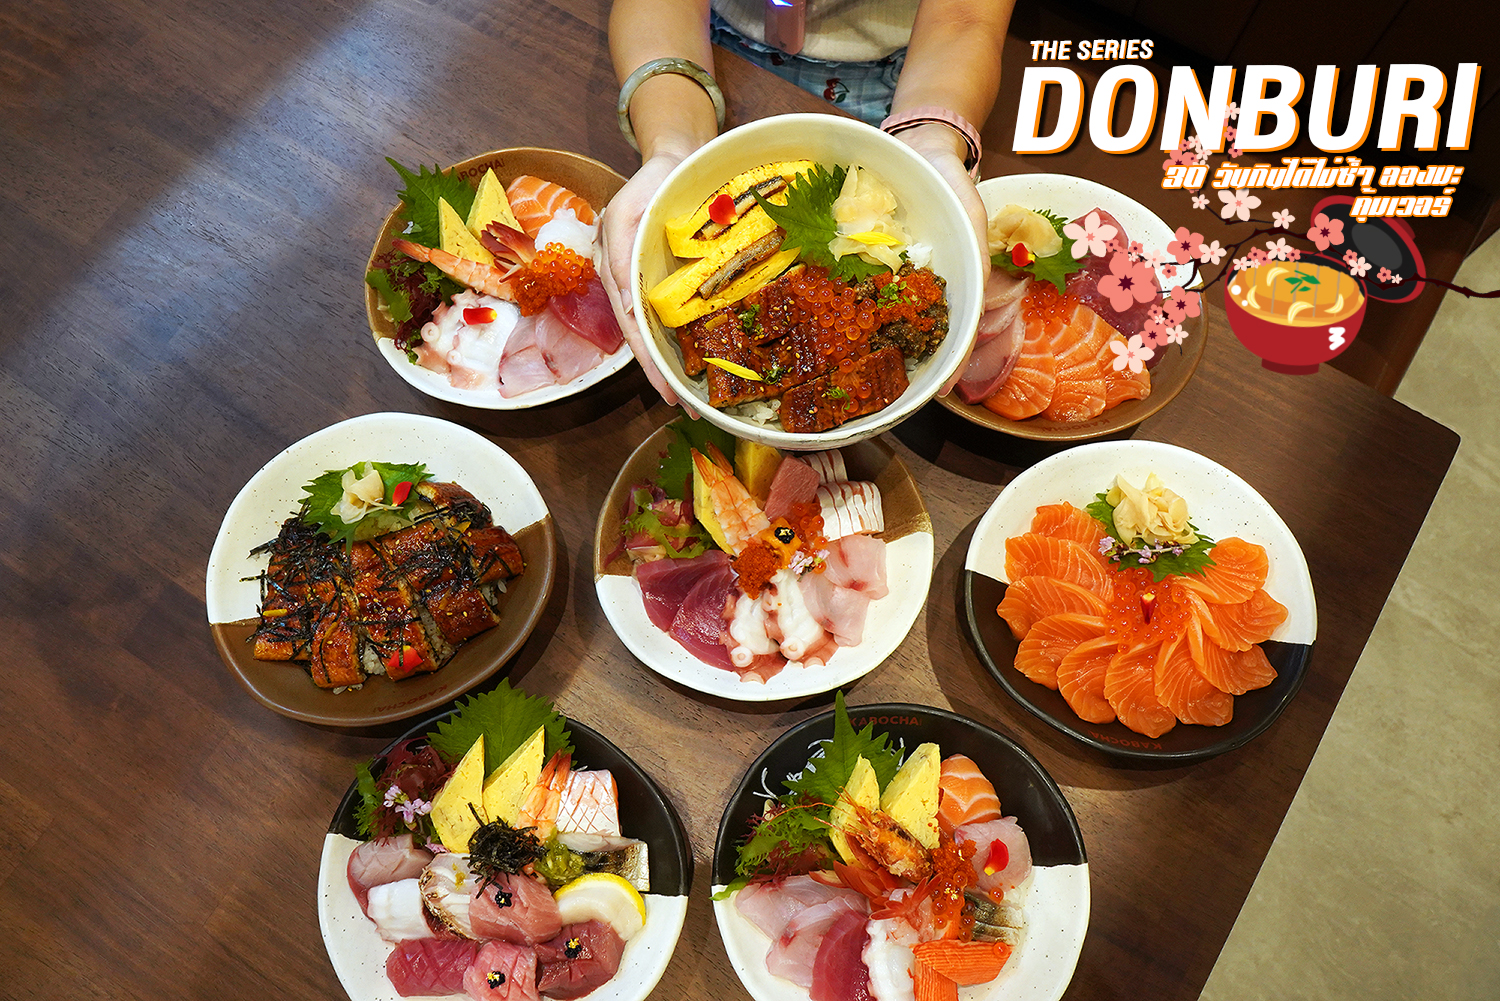 กินกันยาวปาย… เมนูดงบุริ (Donburi) 30 วัน 30 เมนู กินไม่ซ้ำ กินกันเป็นเดอะซีรีส์ 30 ตอน @KABOCHA SUSHI น่ากินสุด พรีเมี่ยมโคตร